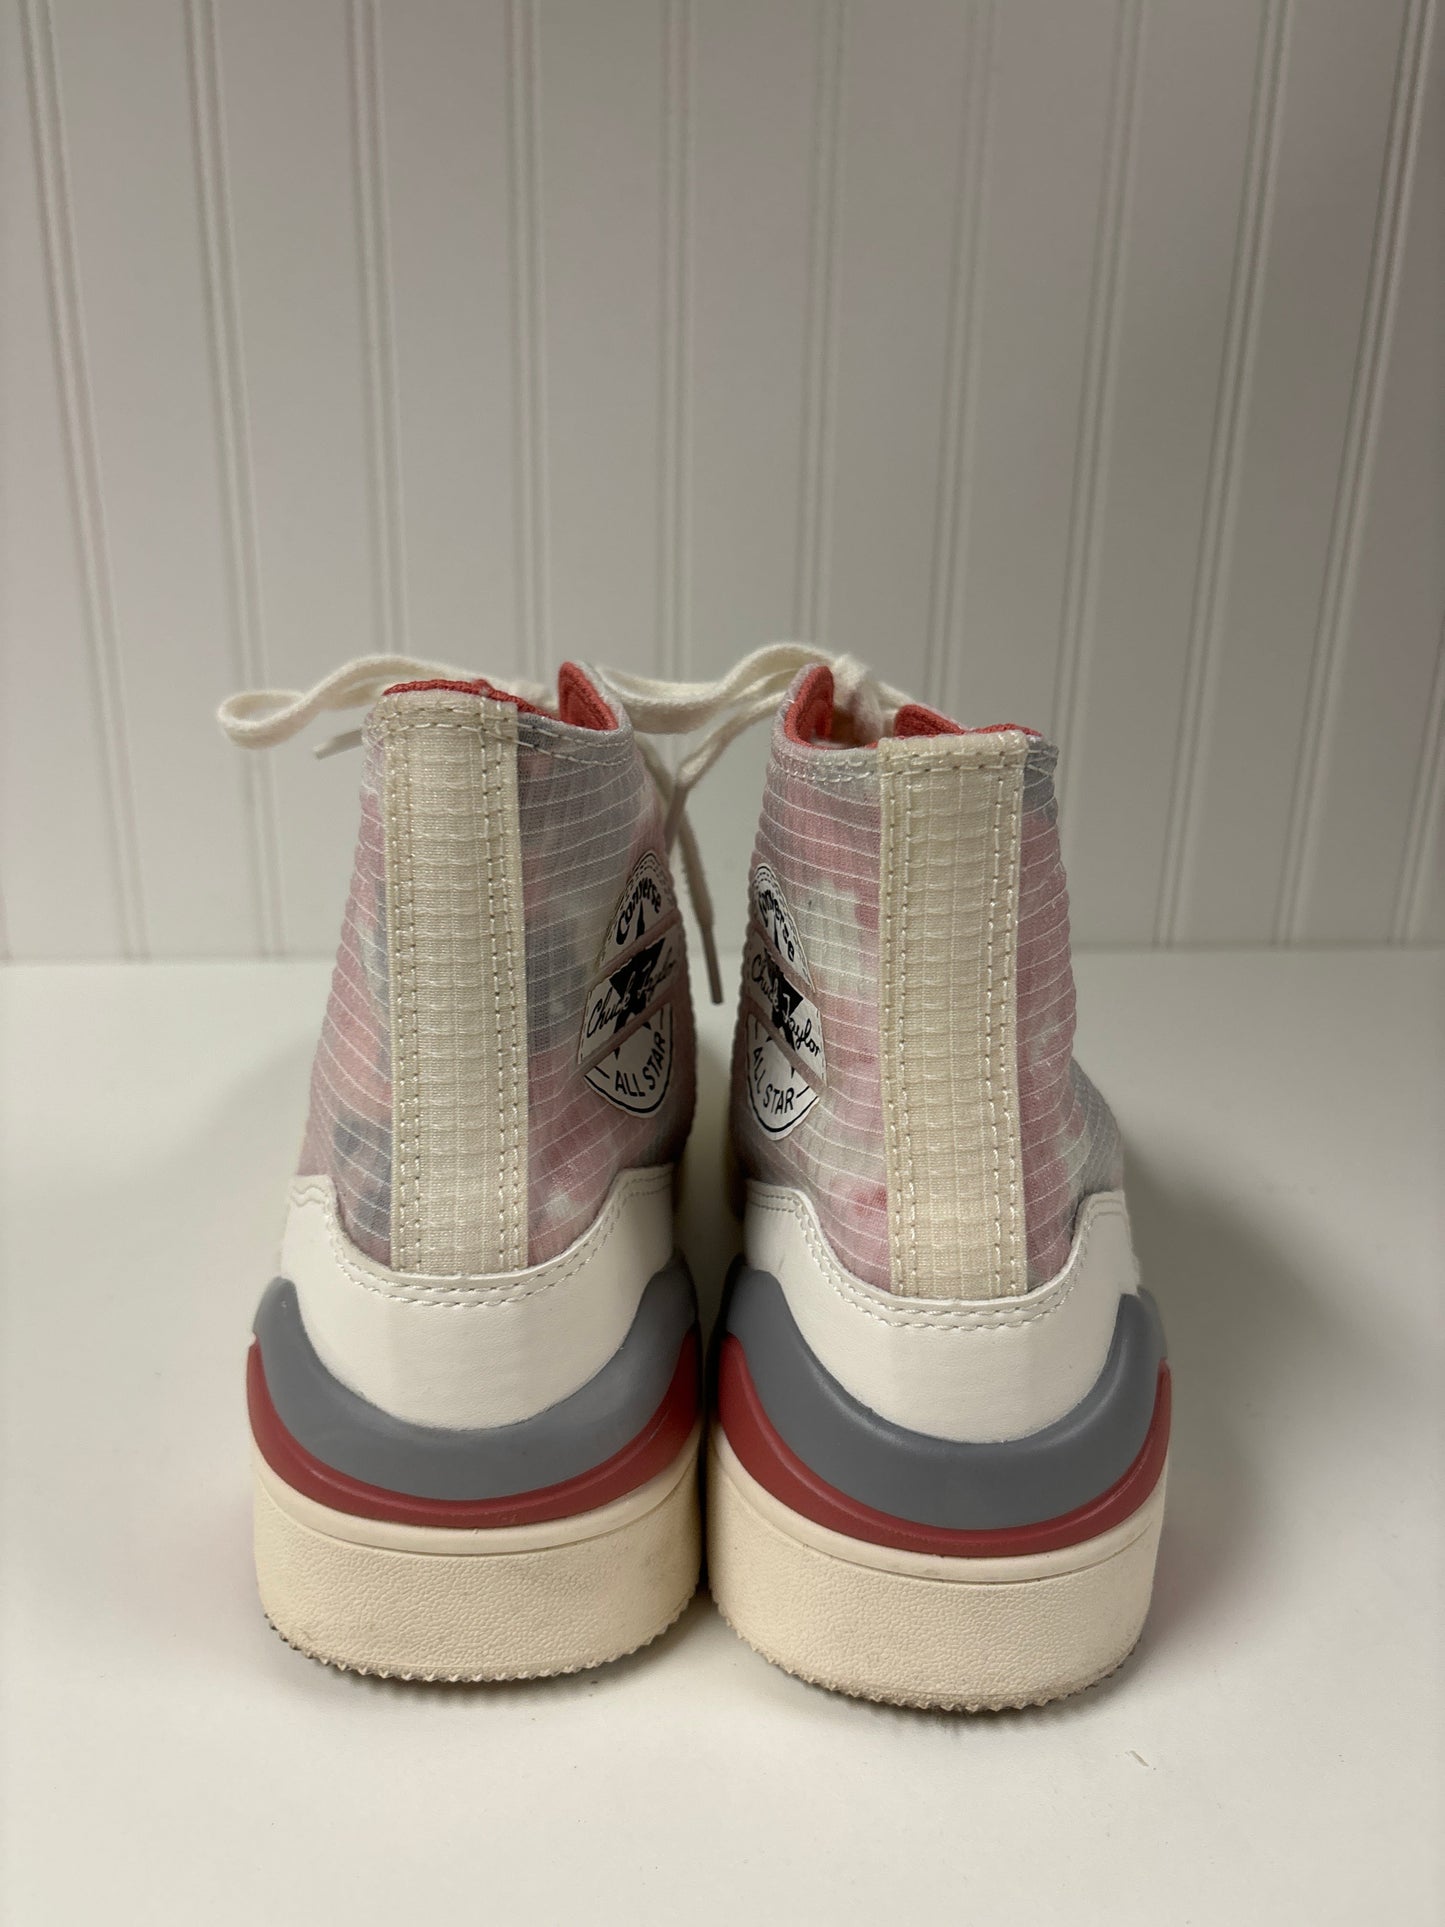 Tie Dye Print Shoes Sneakers Converse, Size 8.5